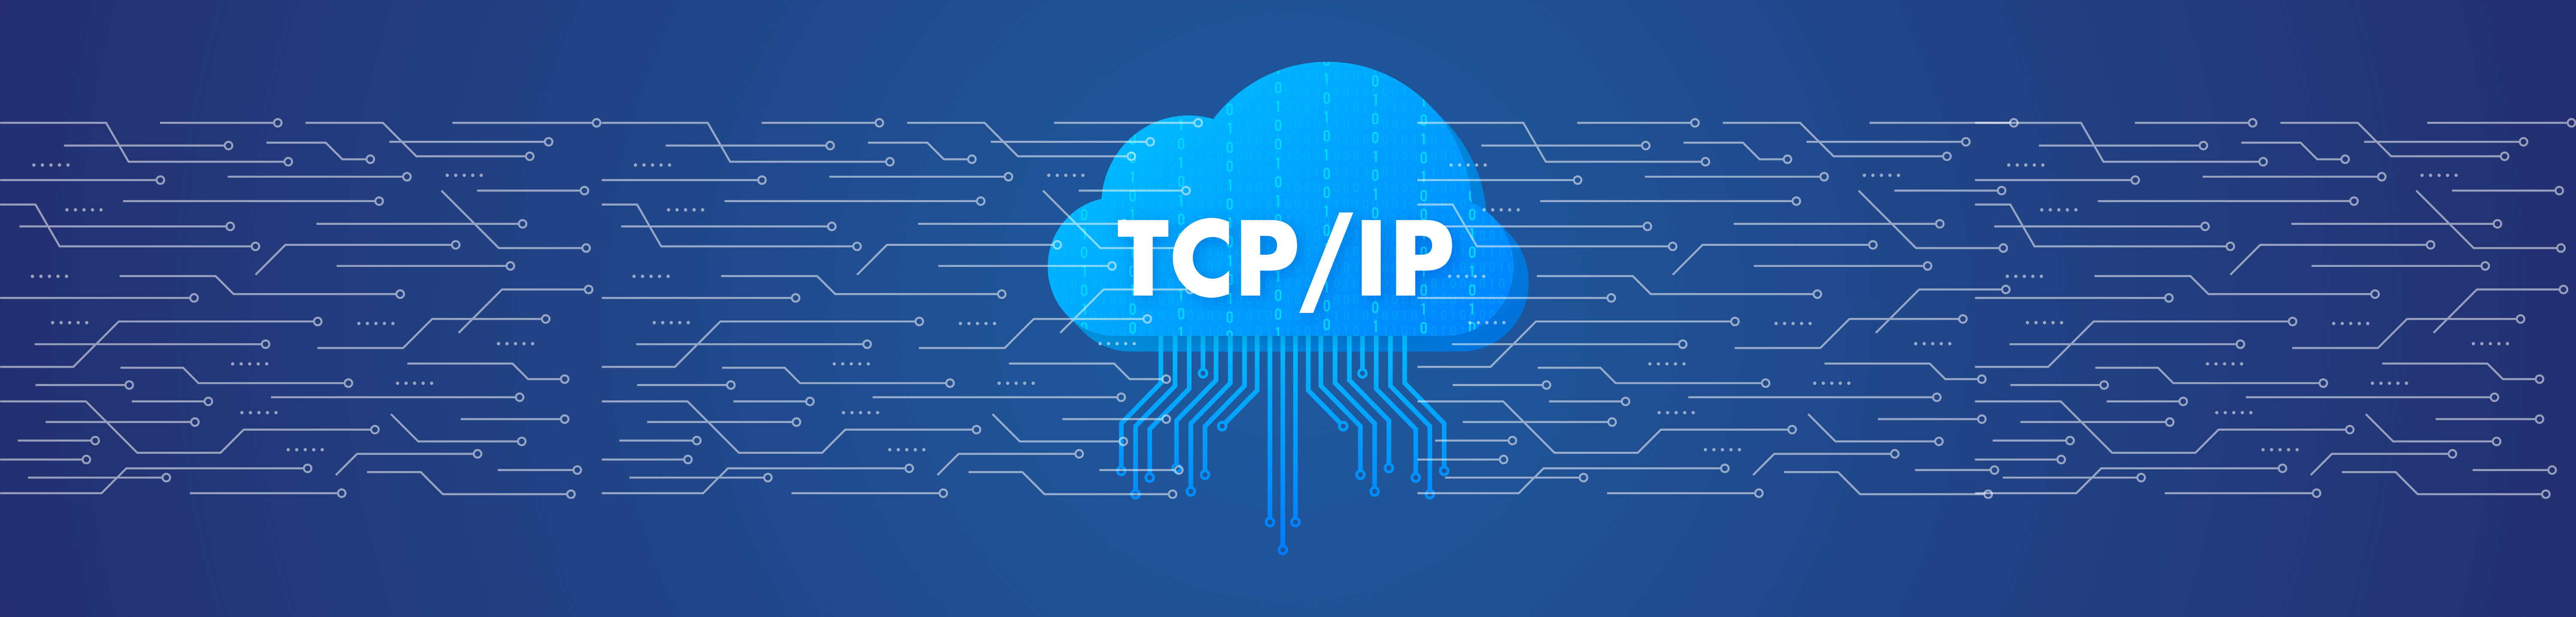 Quelles sont les couches TCP IP image selectionnee